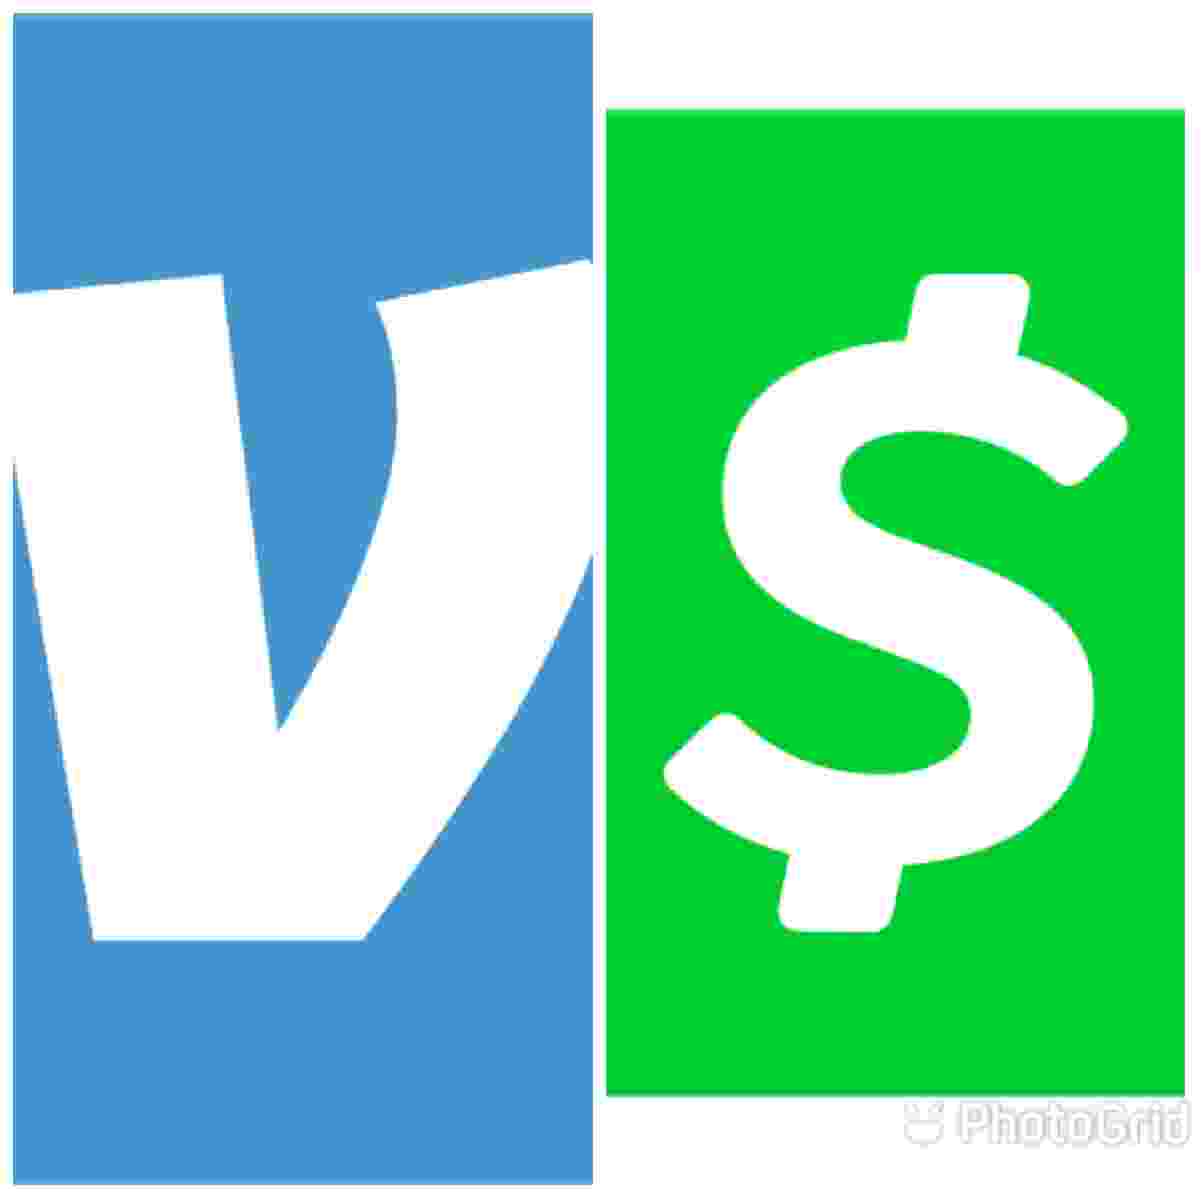 venmo vs cash app